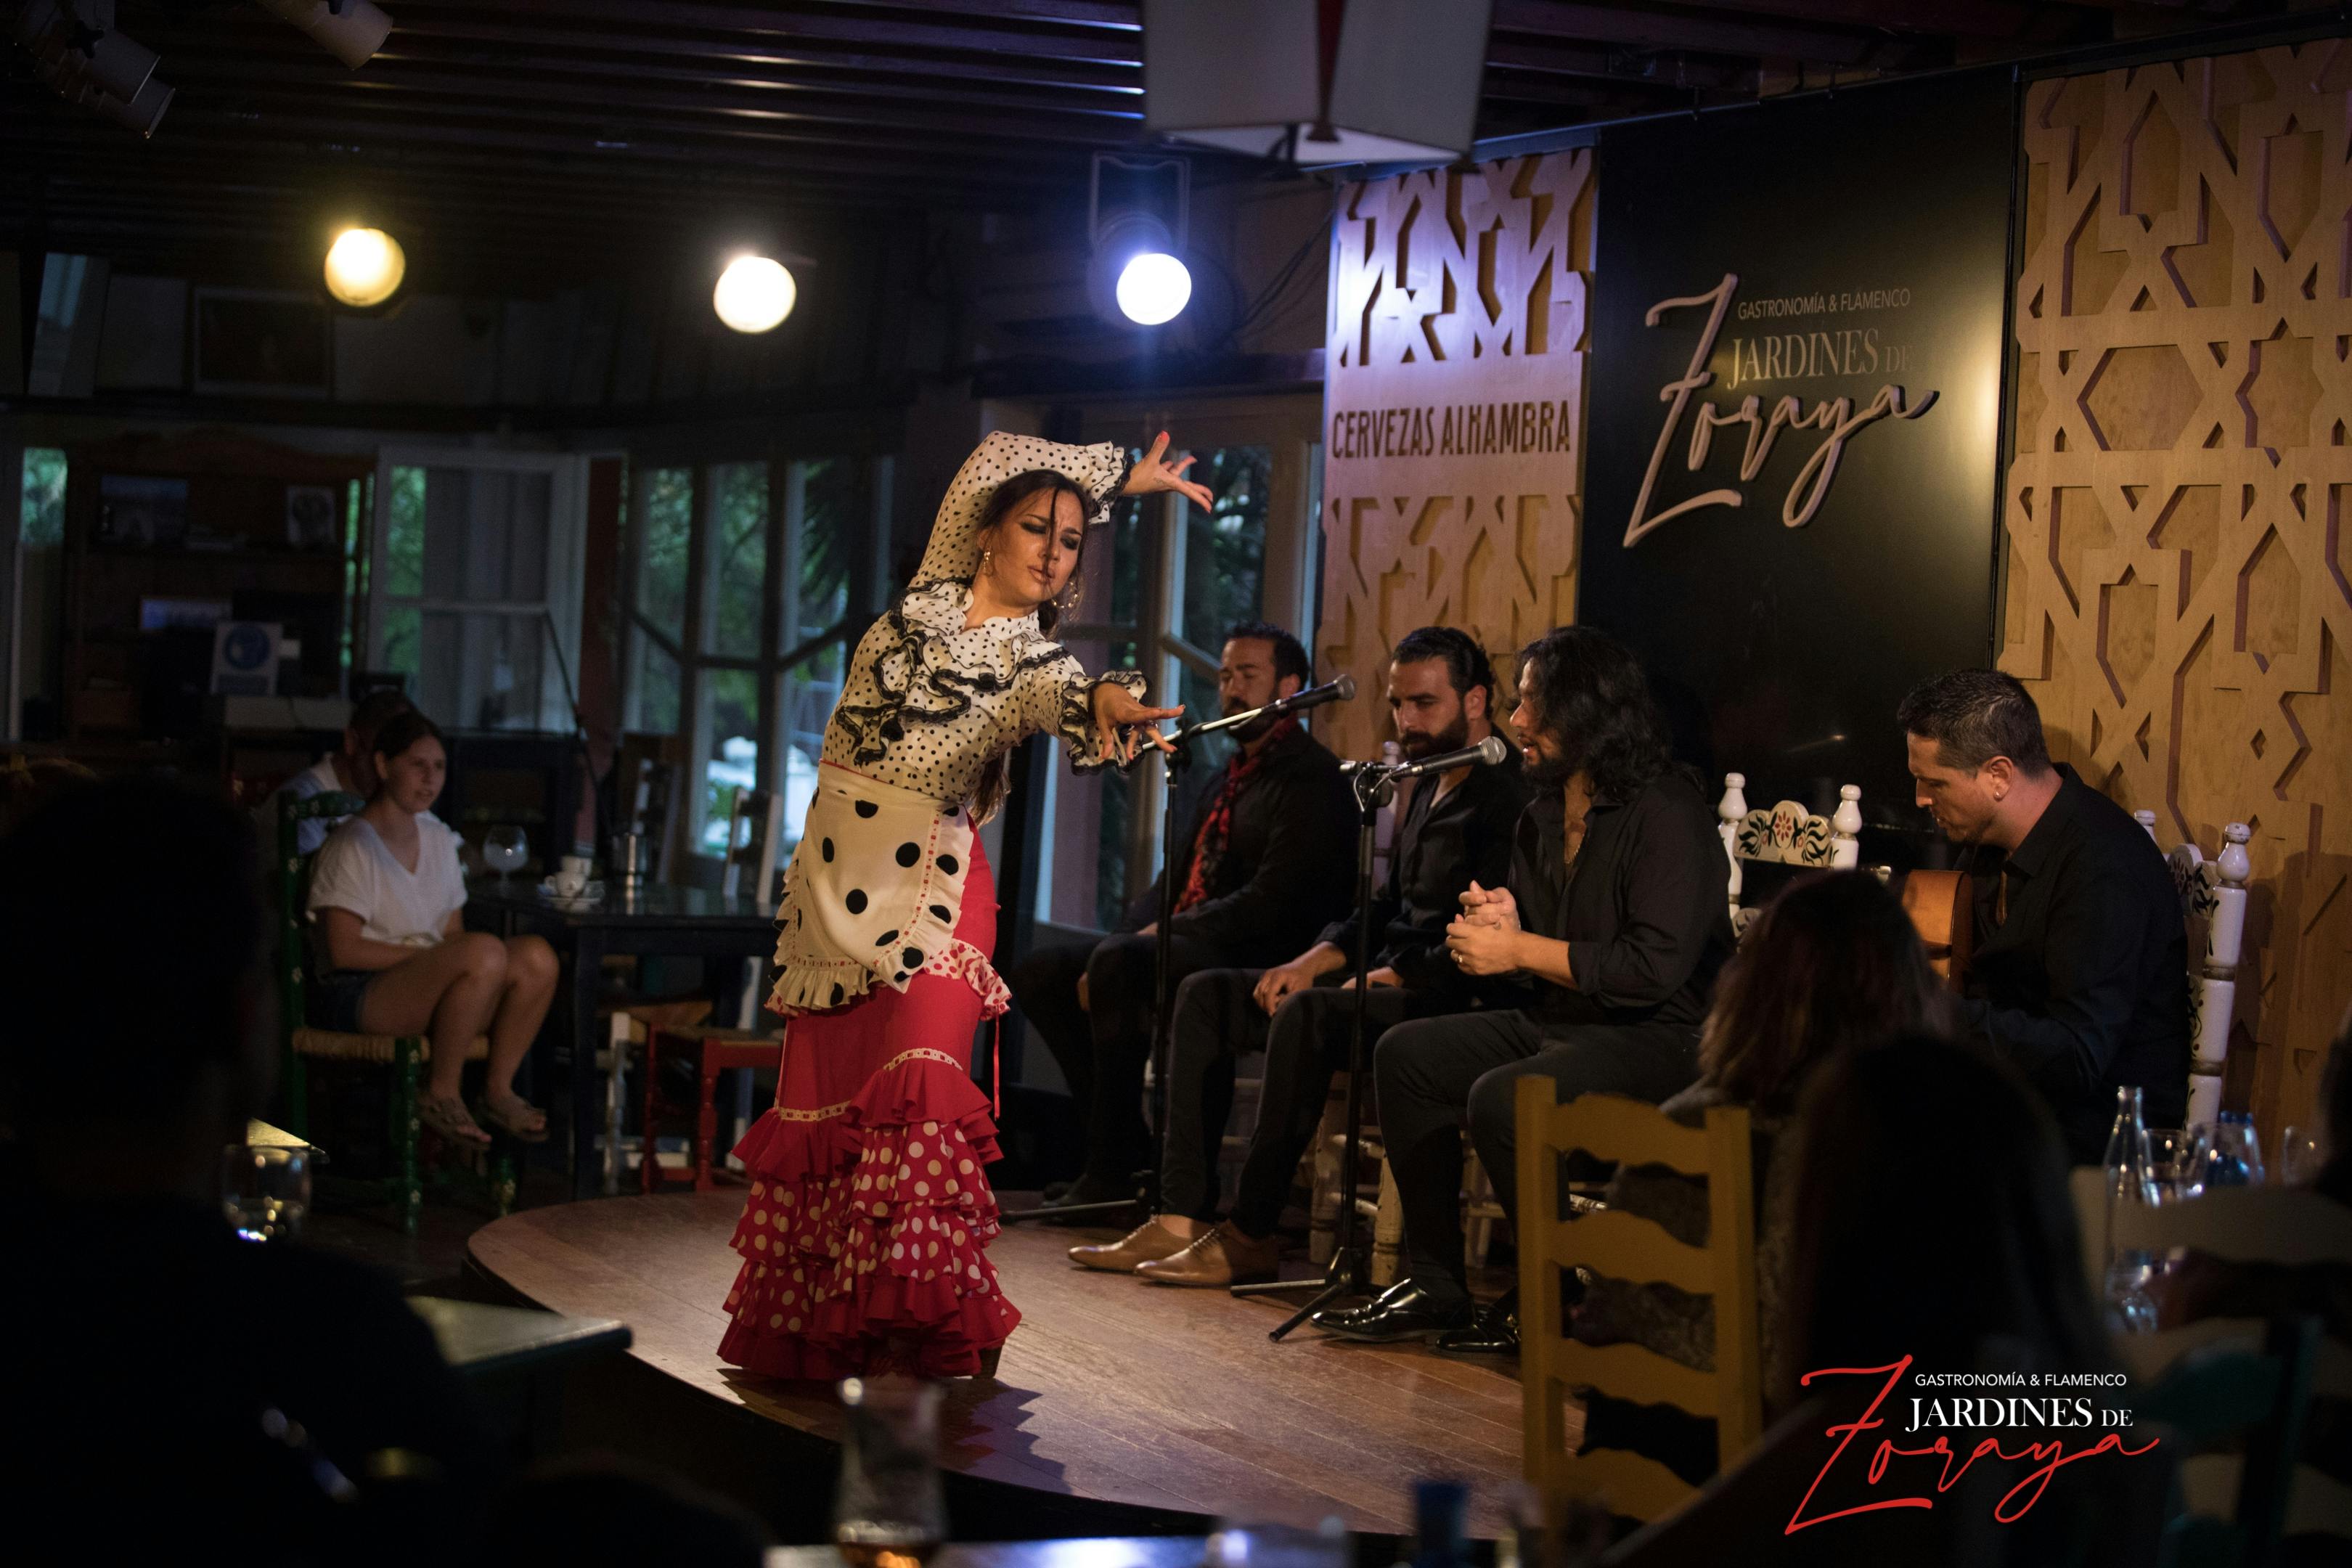 Bilety na pokaz flamenco w Jardines de Zoraya